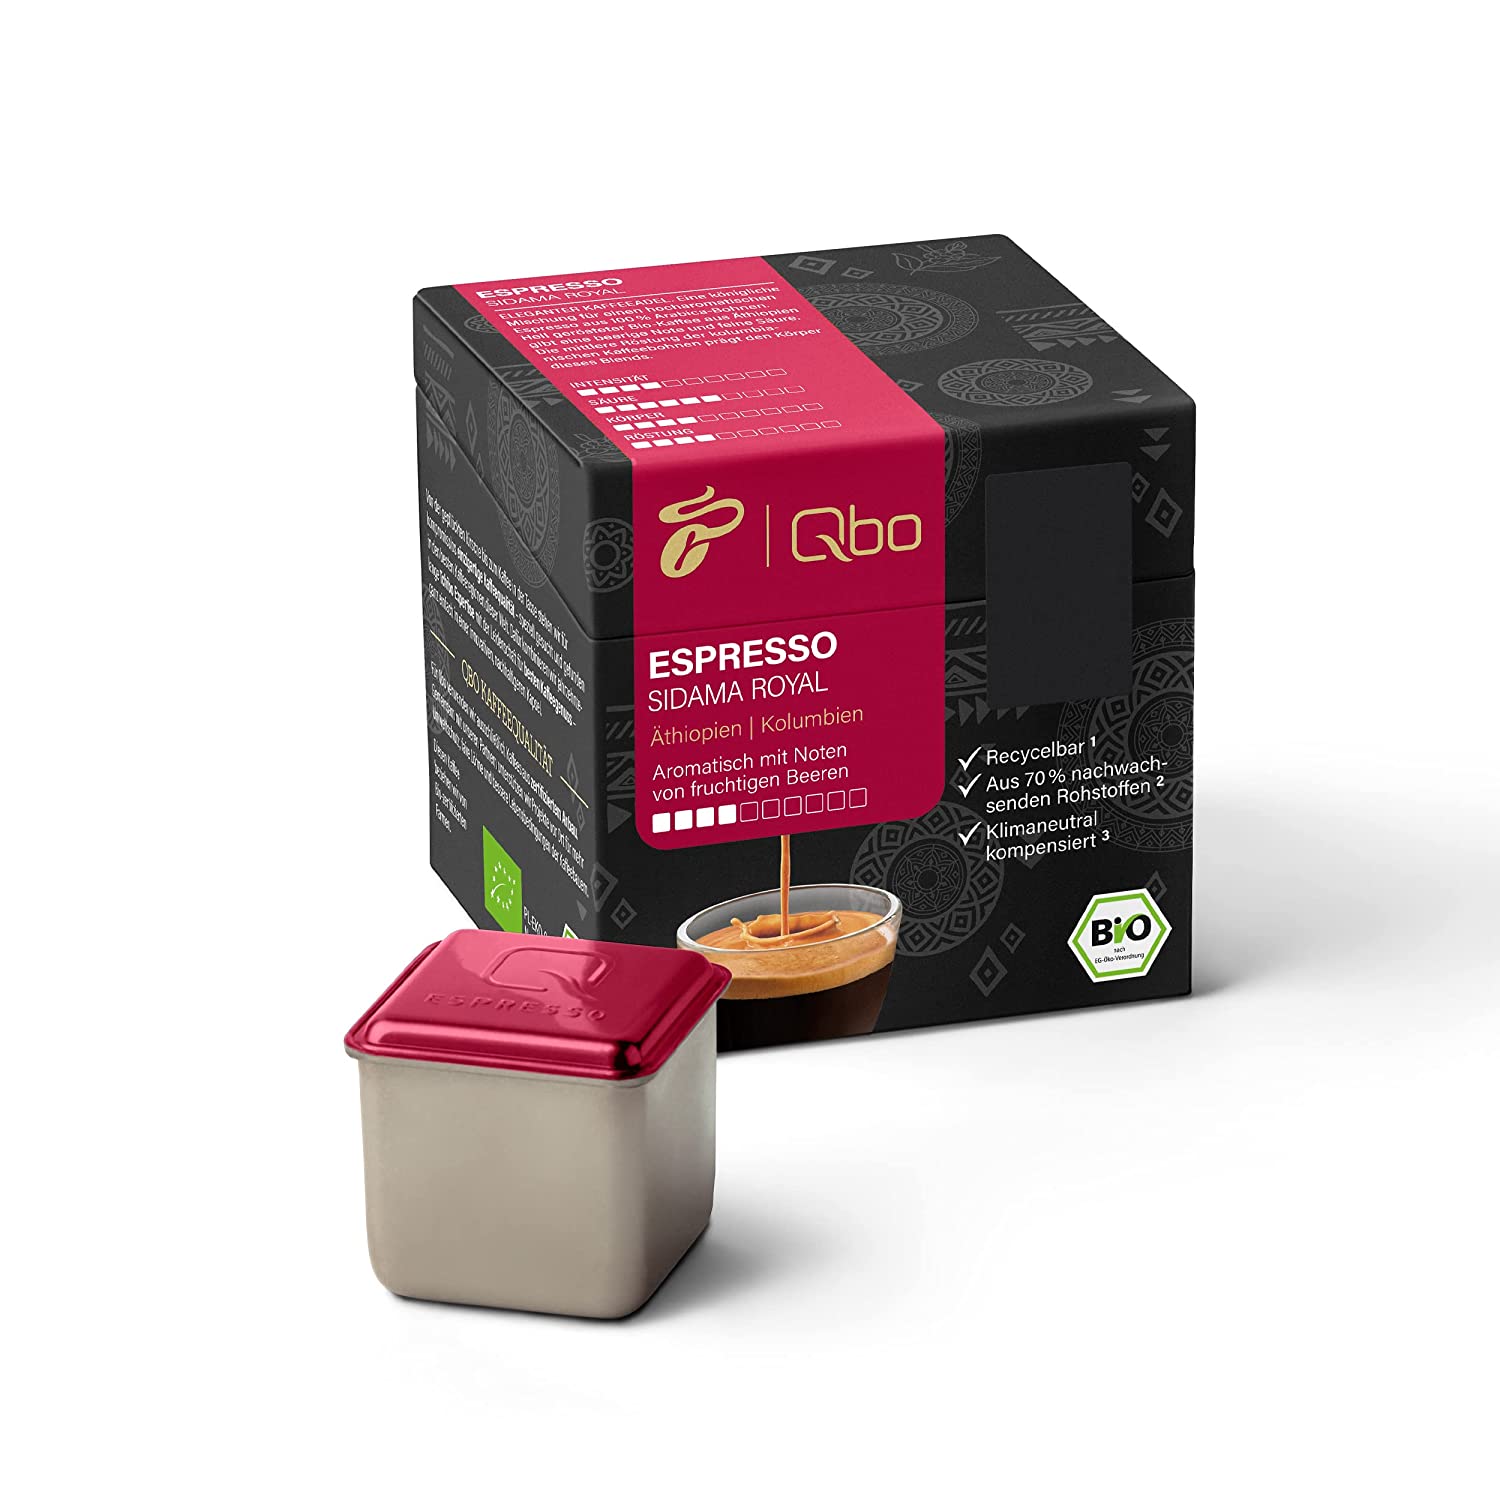 Tchibo Qbo Espresso Sidama Royal Premium Kaffeekapseln, 8 Stück (Espresso, Intensität 4/10, aromatisch und fruchtig), nachhaltig, aus 70% nachwachsenden Rohstoffen & klimaneutral kompensiert